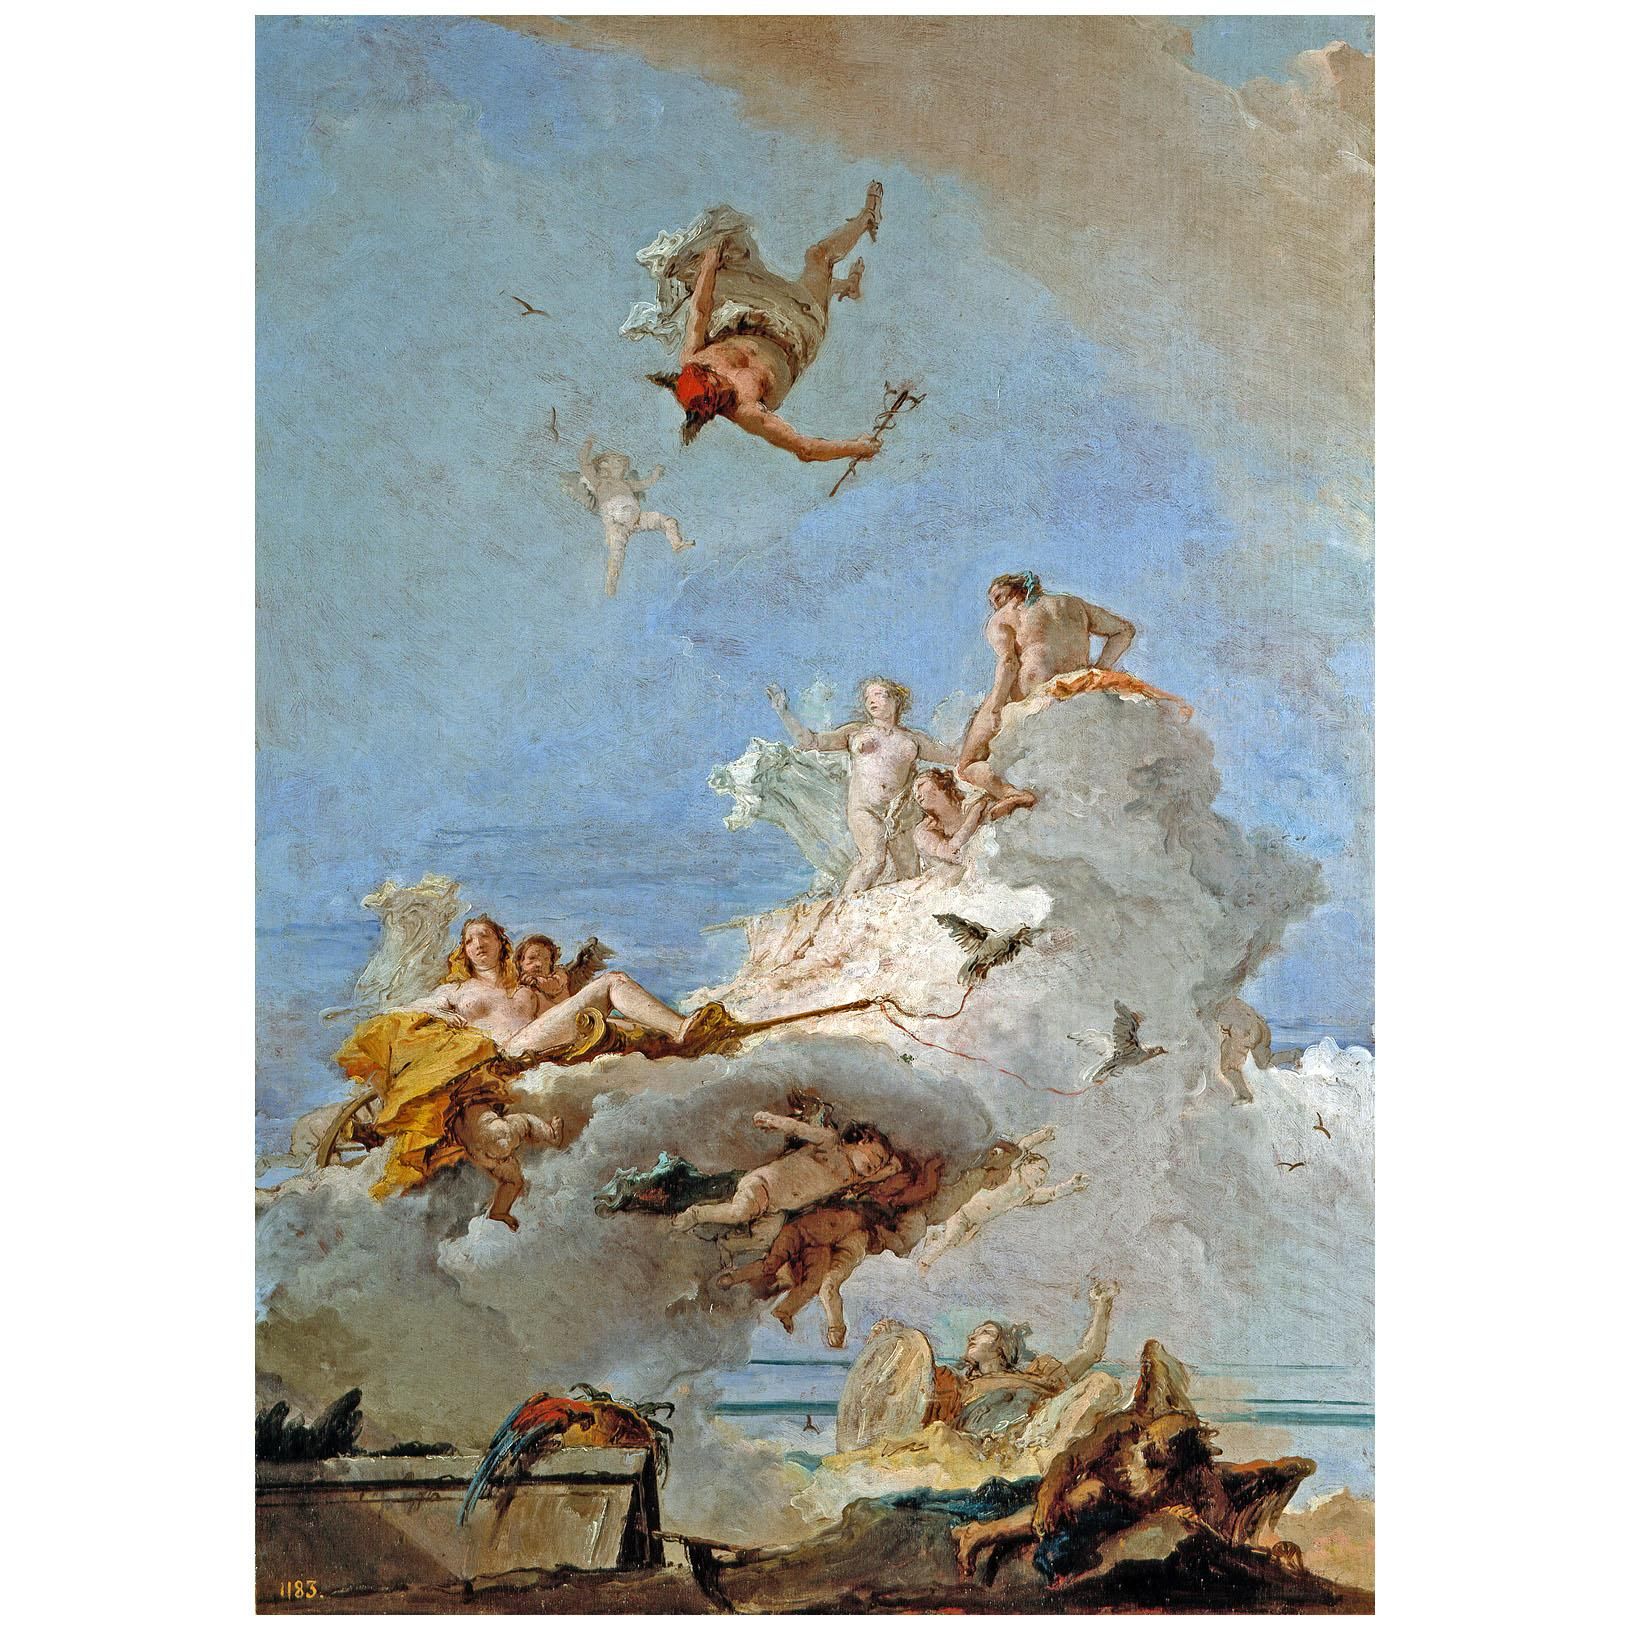 Giovanni Battista Tiepolo. El Olimpo. 1761-1764. Prado